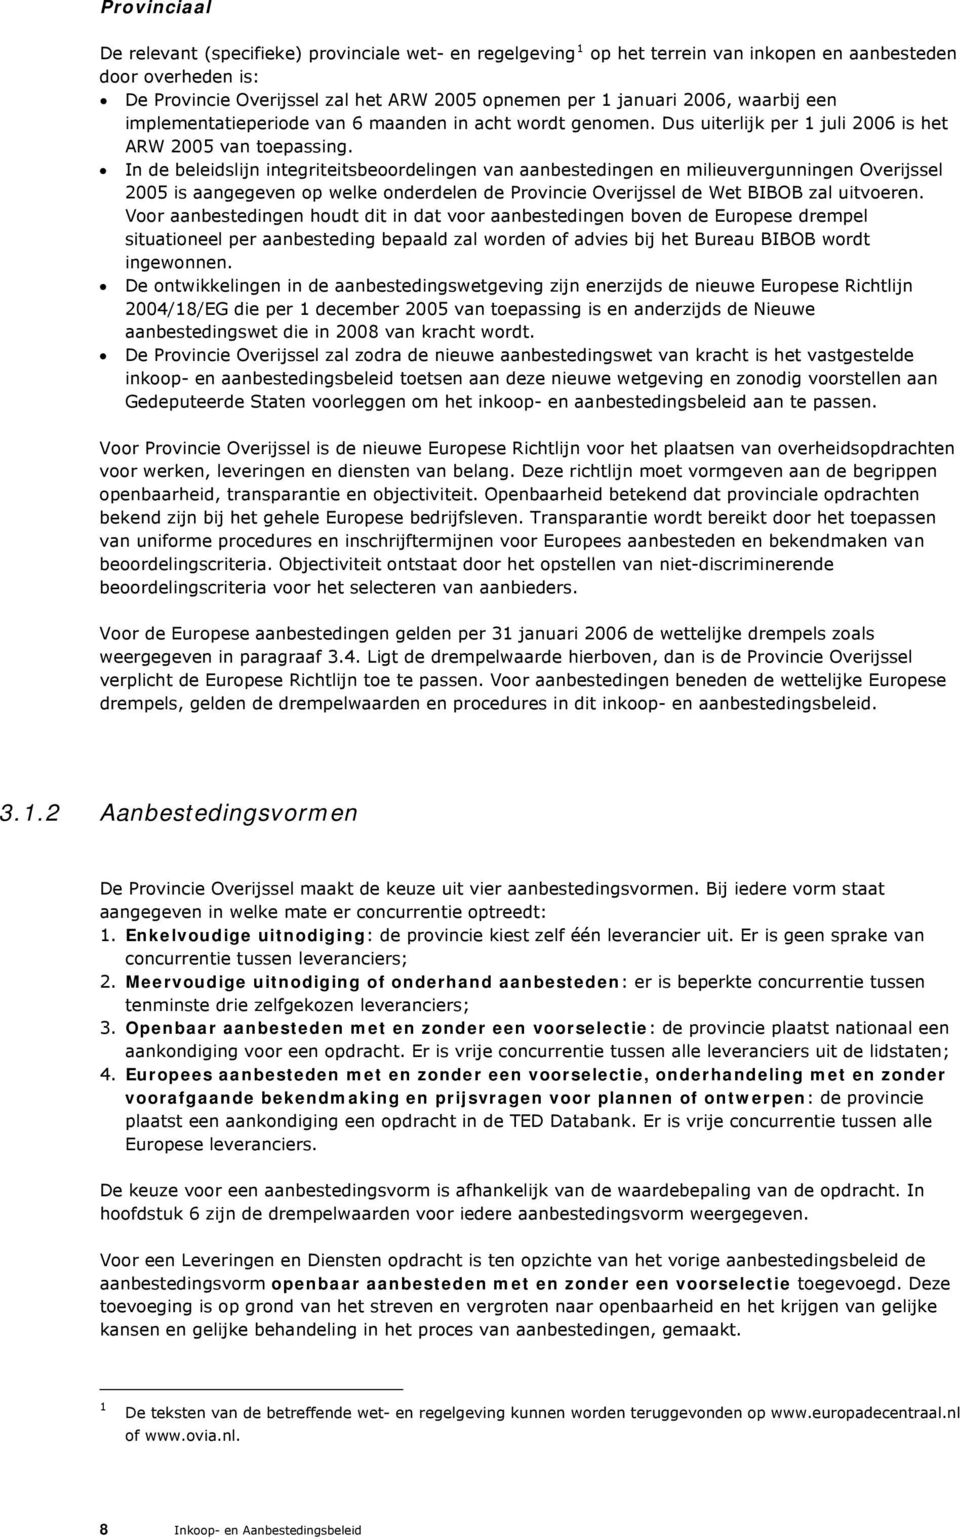 In de beleidslijn integriteitsbeoordelingen van aanbestedingen en milieuvergunningen Overijssel 2005 is aangegeven op welke onderdelen de Provincie Overijssel de Wet BIBOB zal uitvoeren.